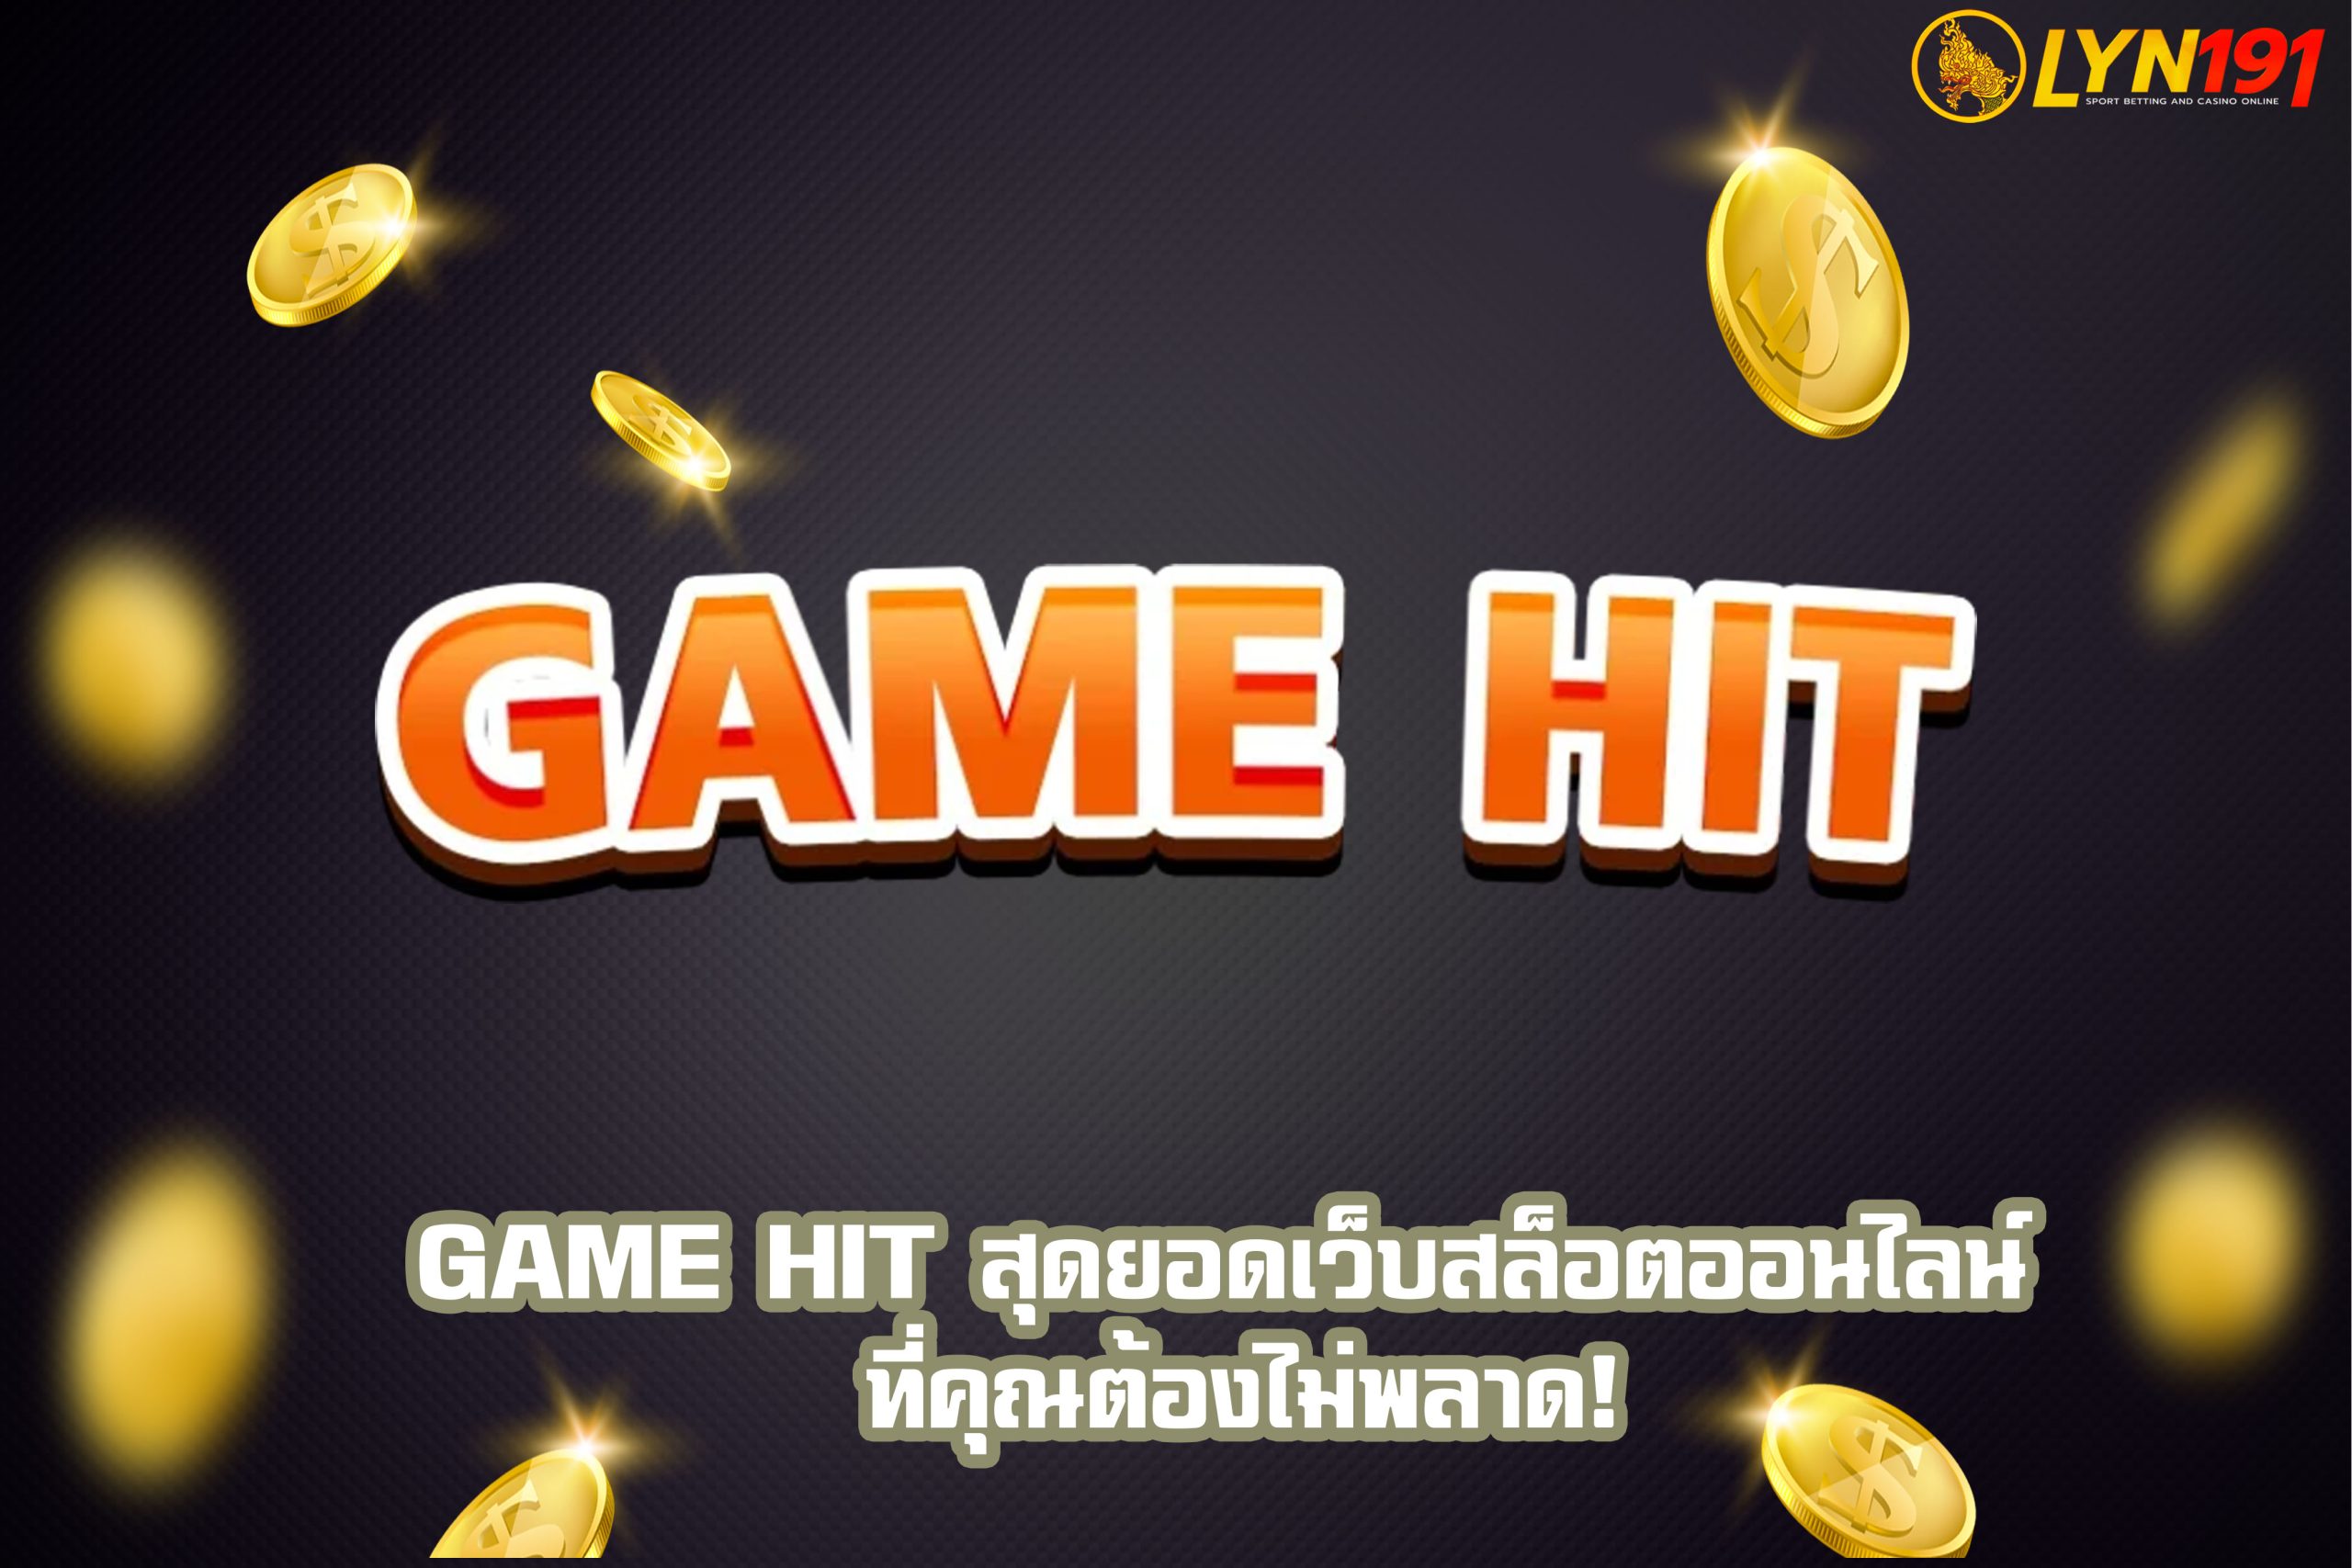 GAME HIT สุดยอดเว็บสล็อตออนไลน์ ที่คุณต้องไม่พลาด!